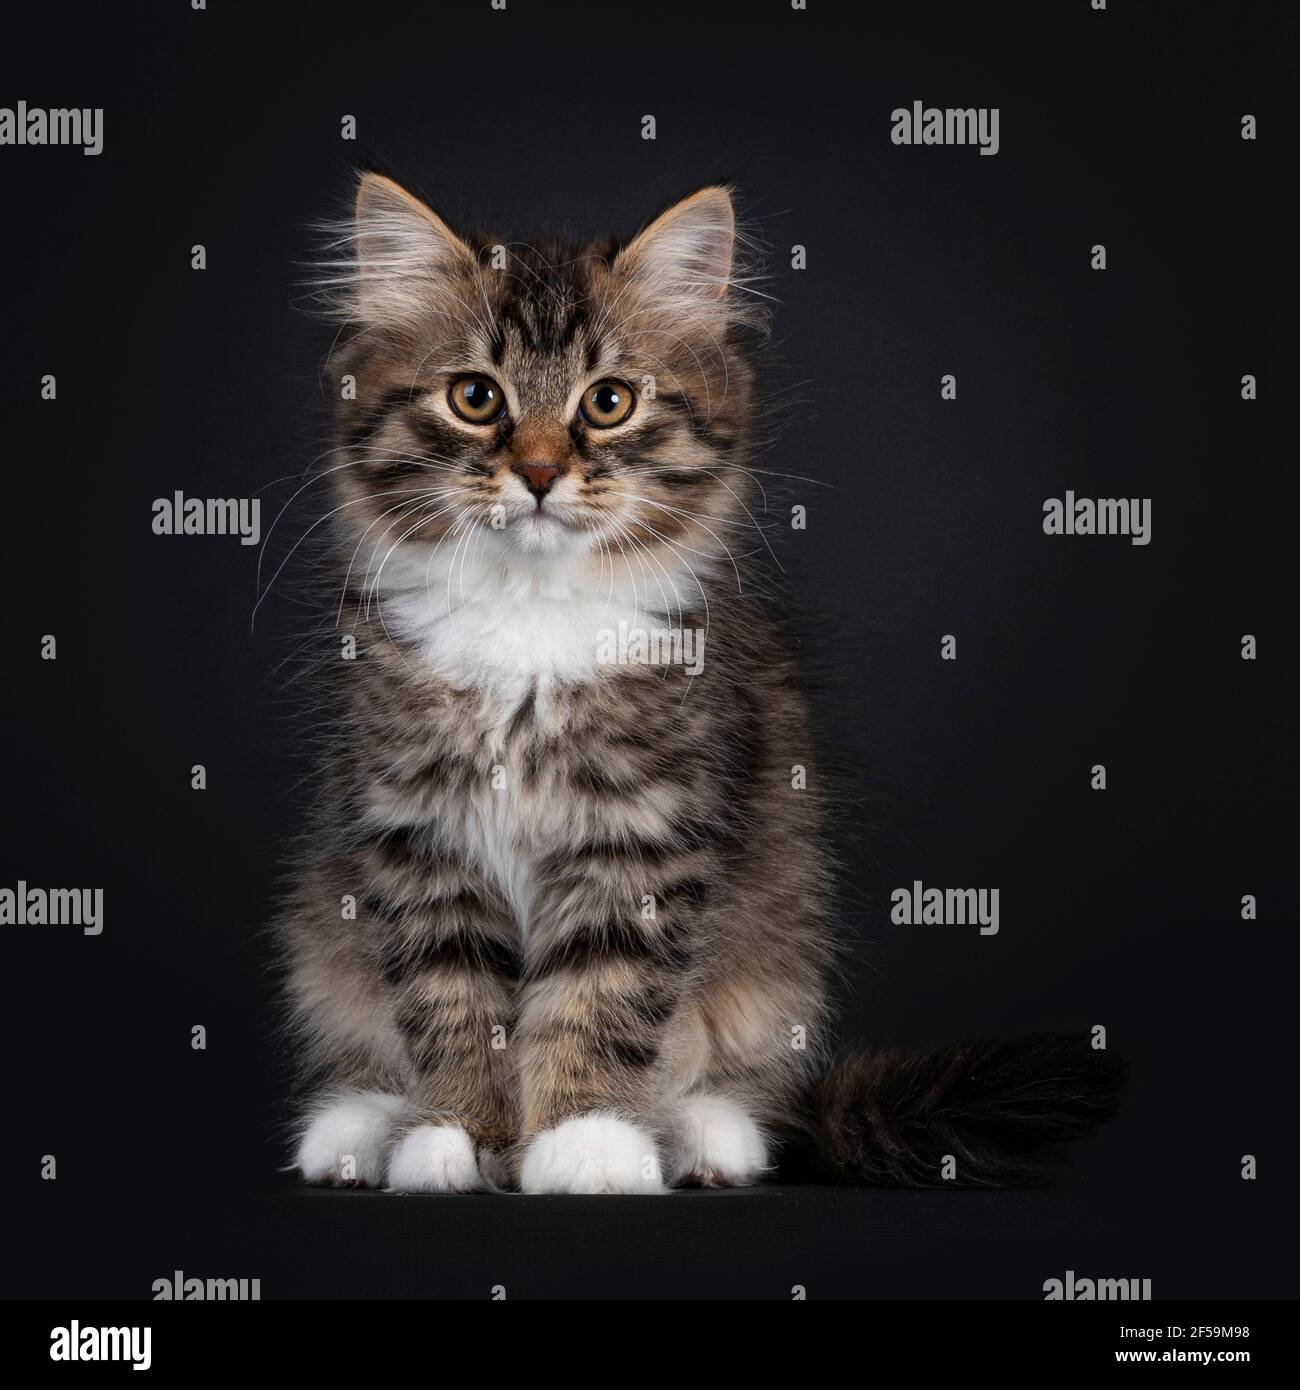 Adorable tabby noir avec chaton de chat de Sibérie blanc, assis face à l'avant. Regarder directement vers l'appareil photo. Isolé sur fond noir. Banque D'Images